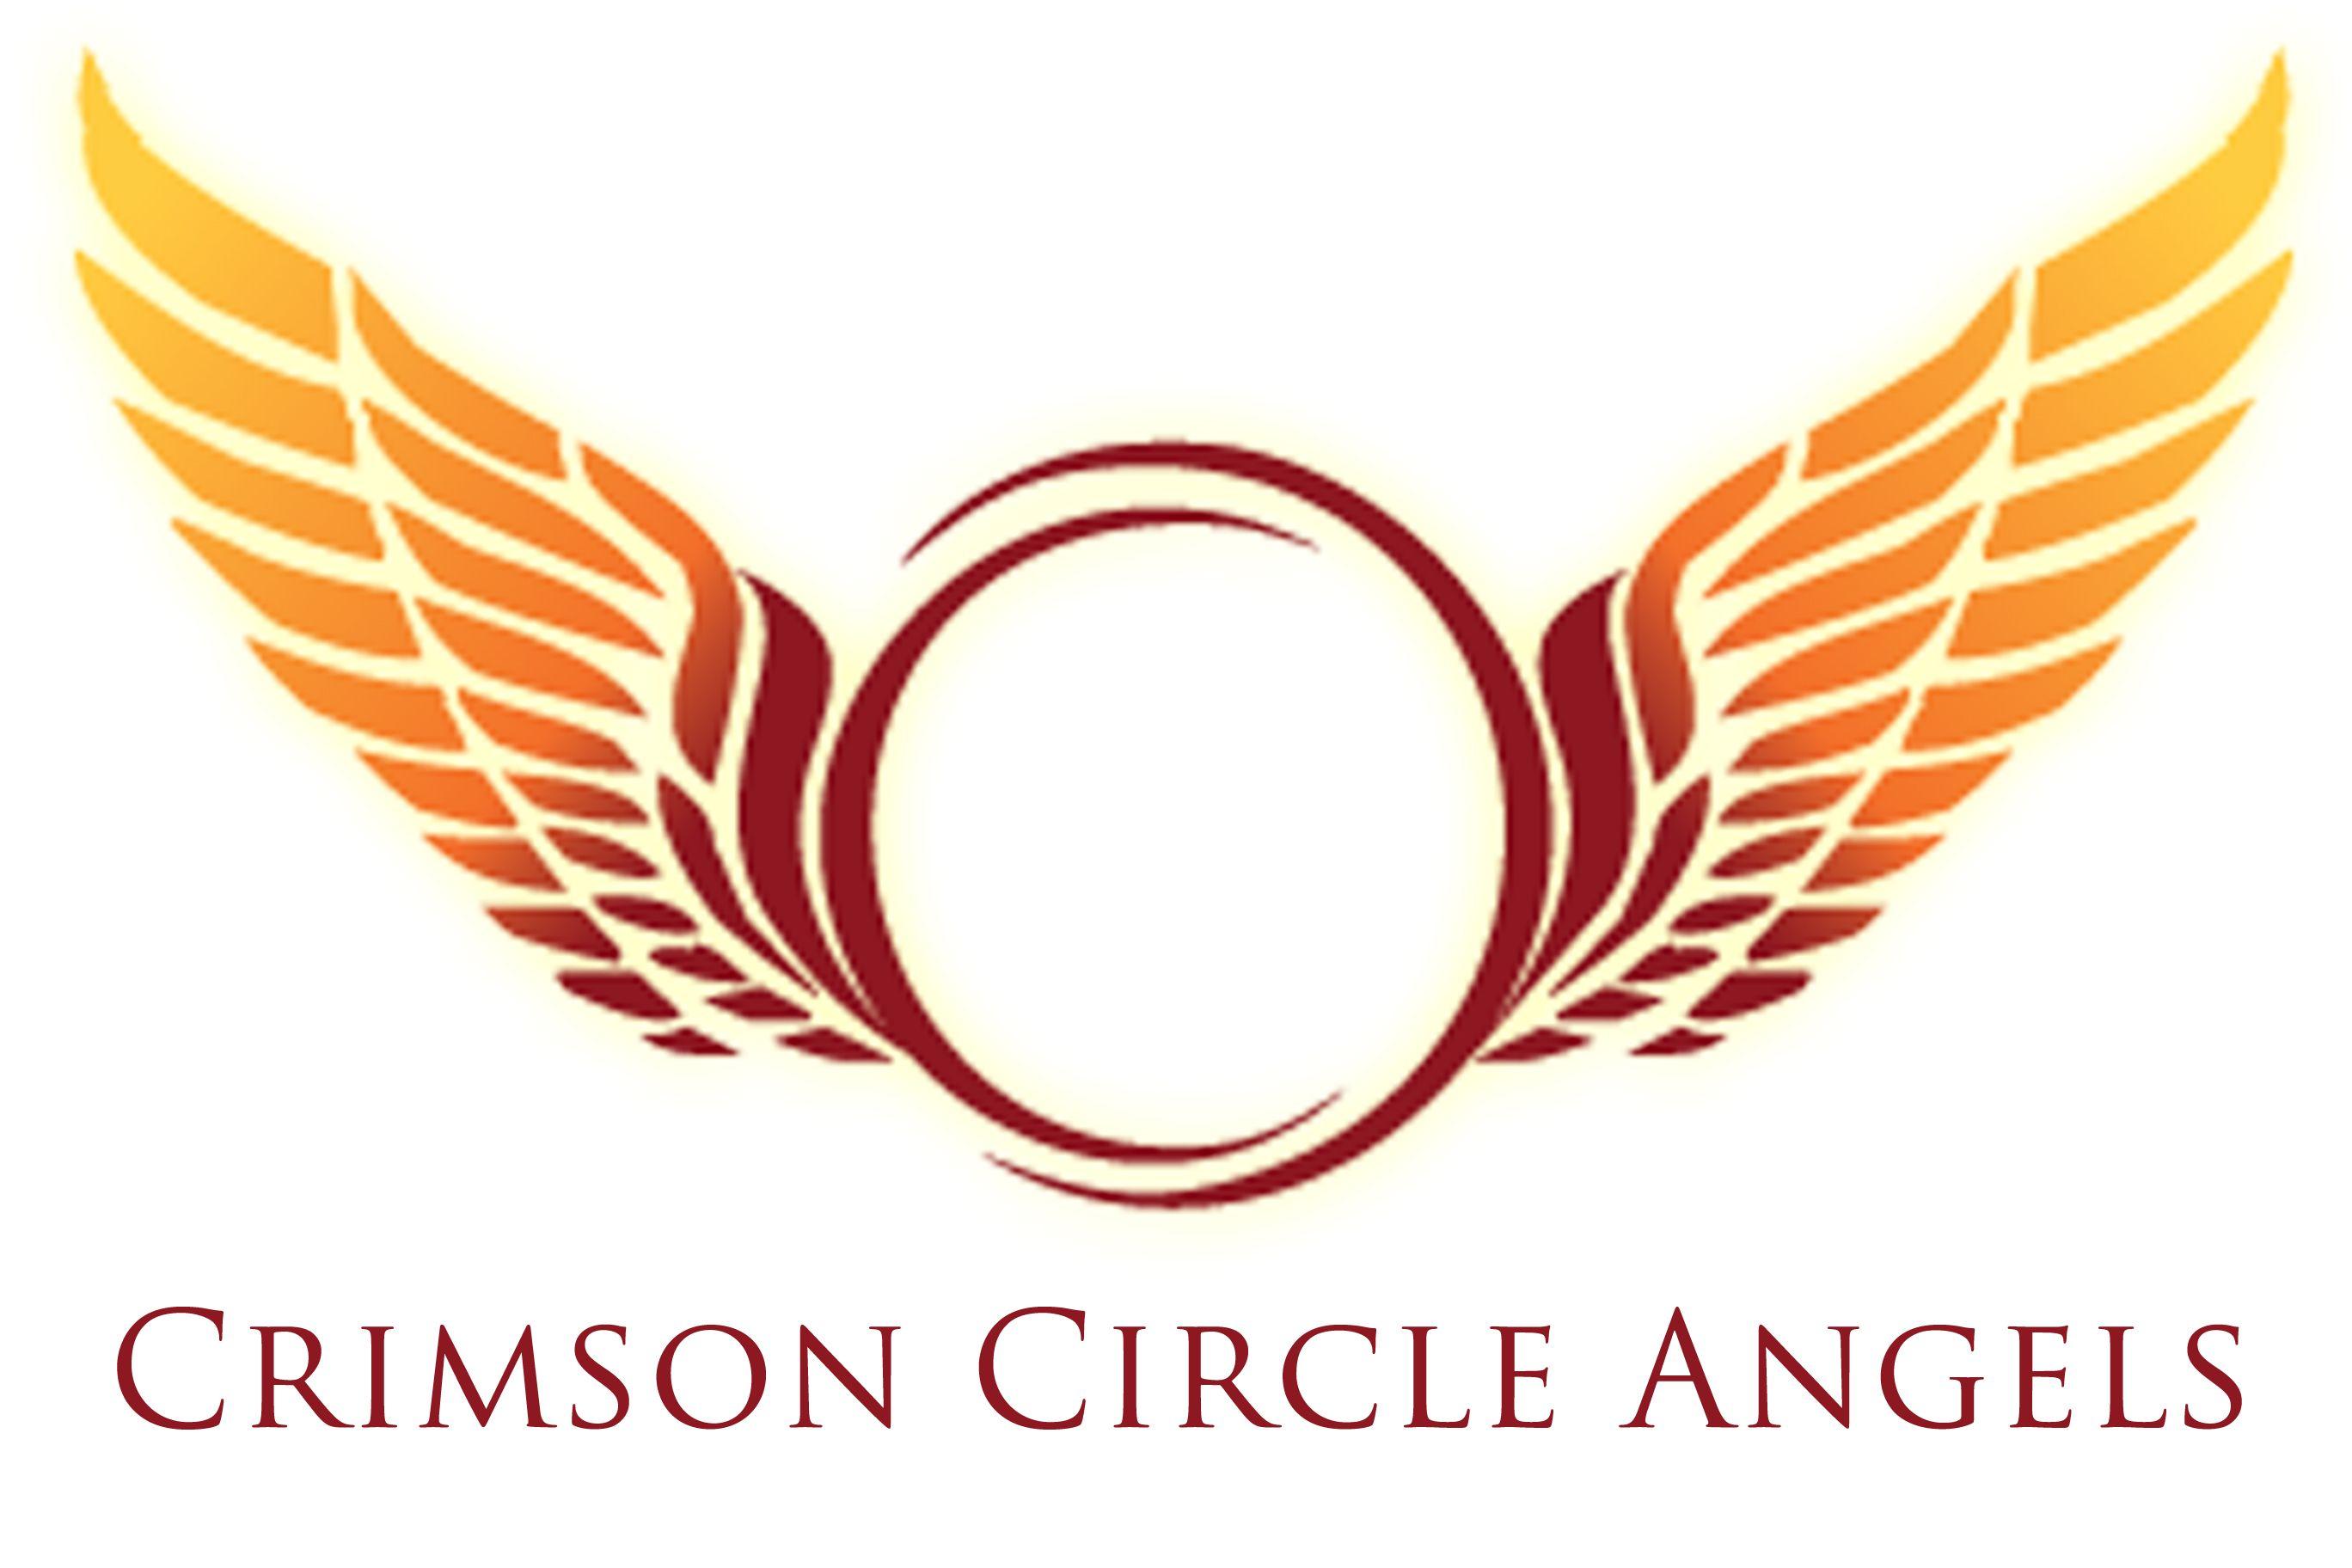 Angel Wings Logo - Free Angel Wings Logo, Download Free Clip Art, Free Clip Art